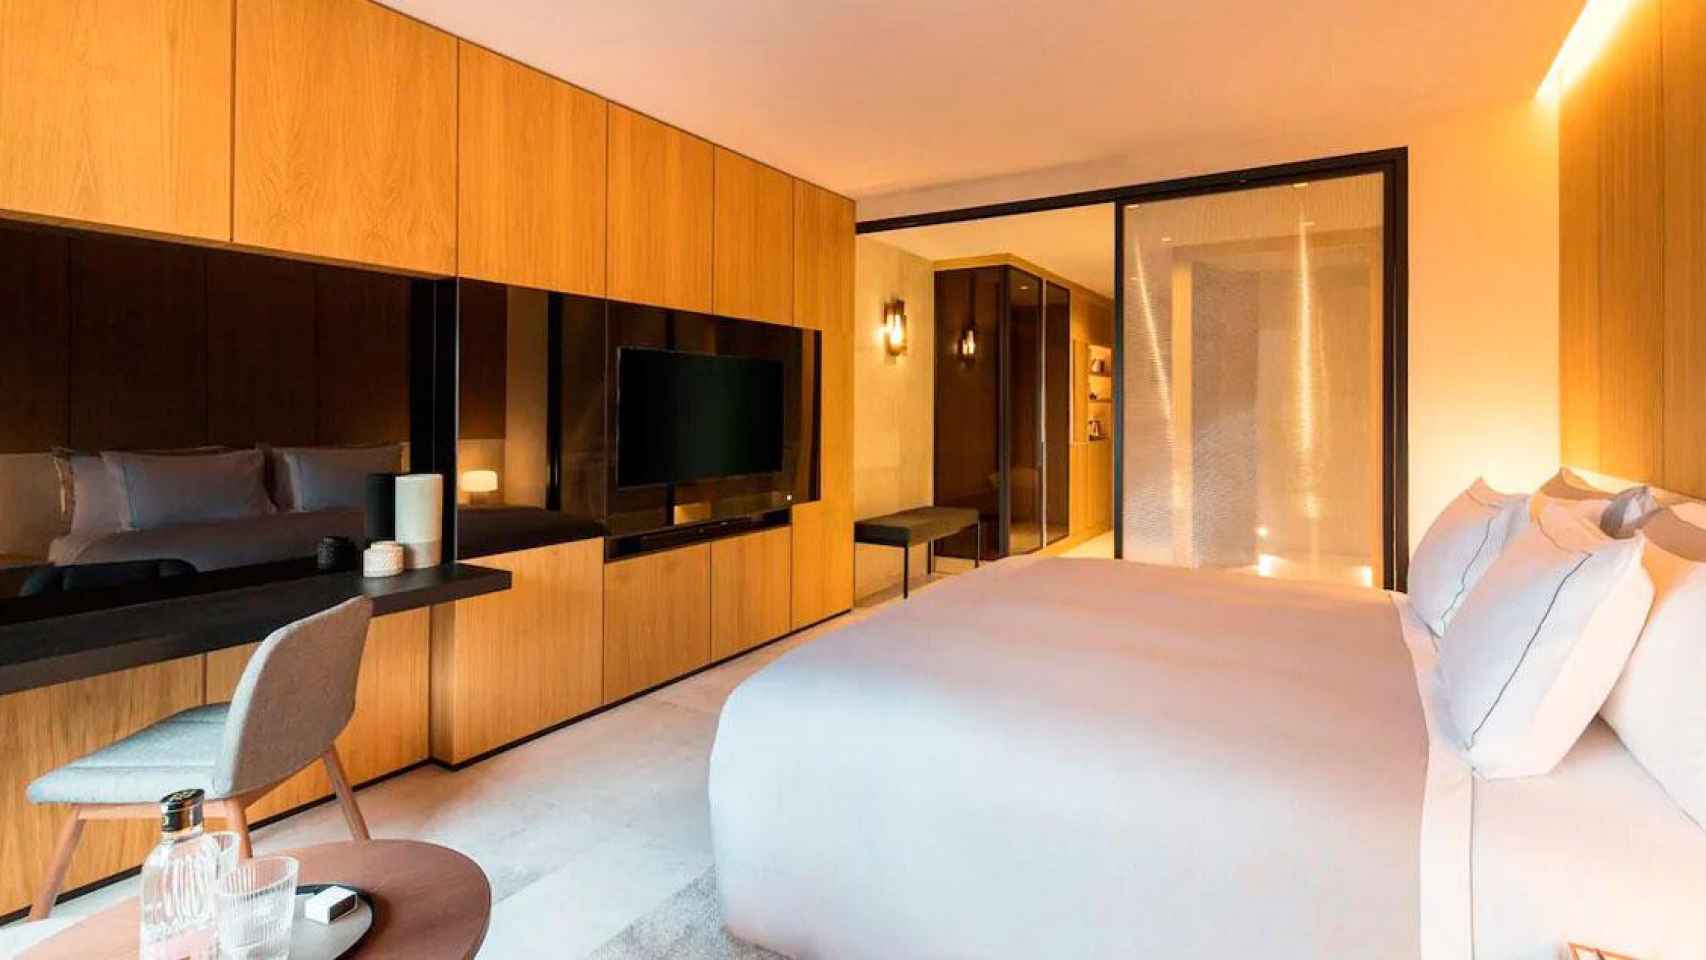 Imagen de una habitación del Hotel Sofía, la joya de la corona de Selenta Group / CG